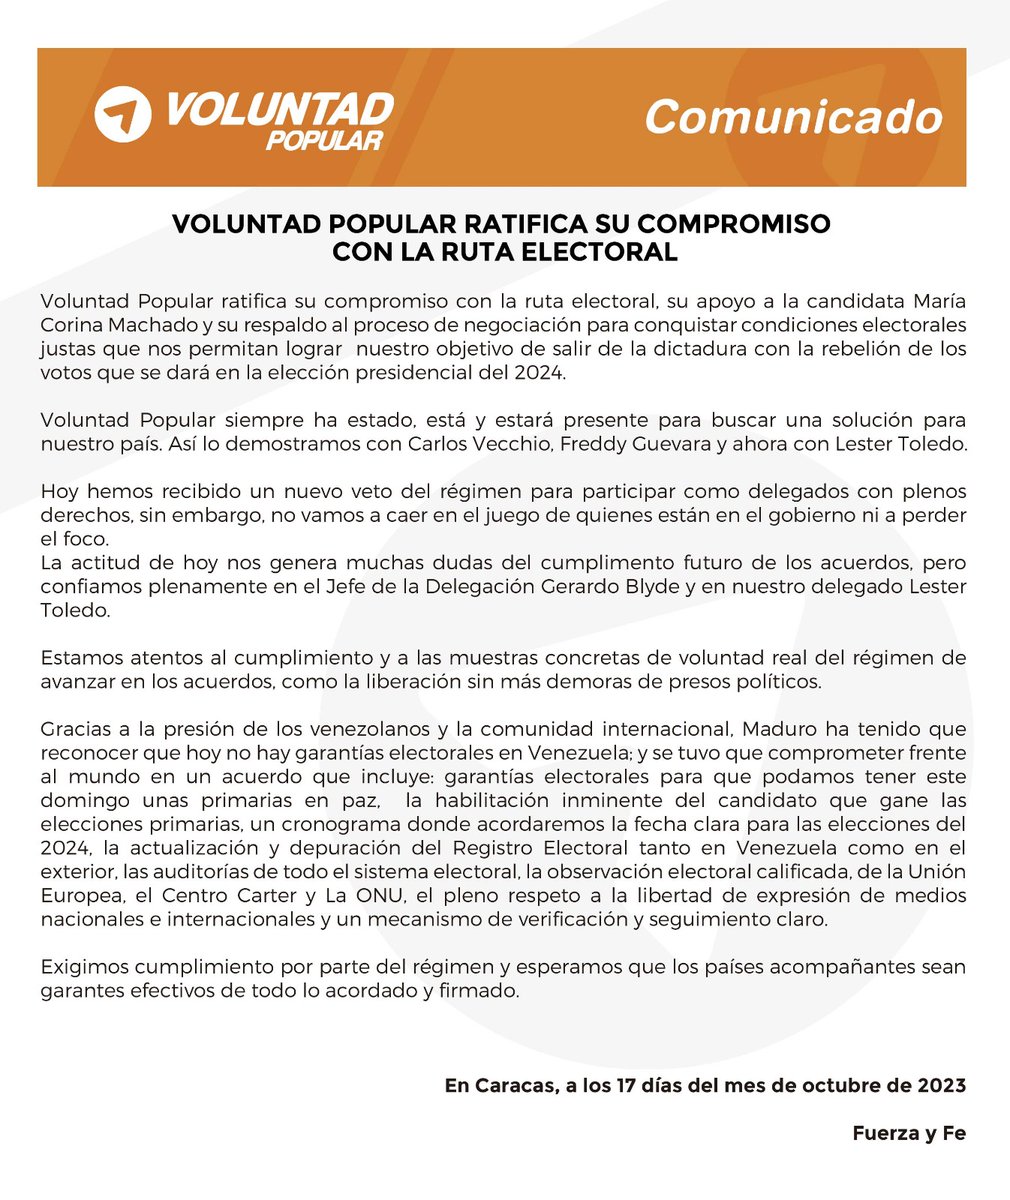 Ratificamos nuestro compromiso con la ruta electoral, el apoyo a María Corina y respaldamos el proceso de negociación para conquistar condiciones electorales justas.